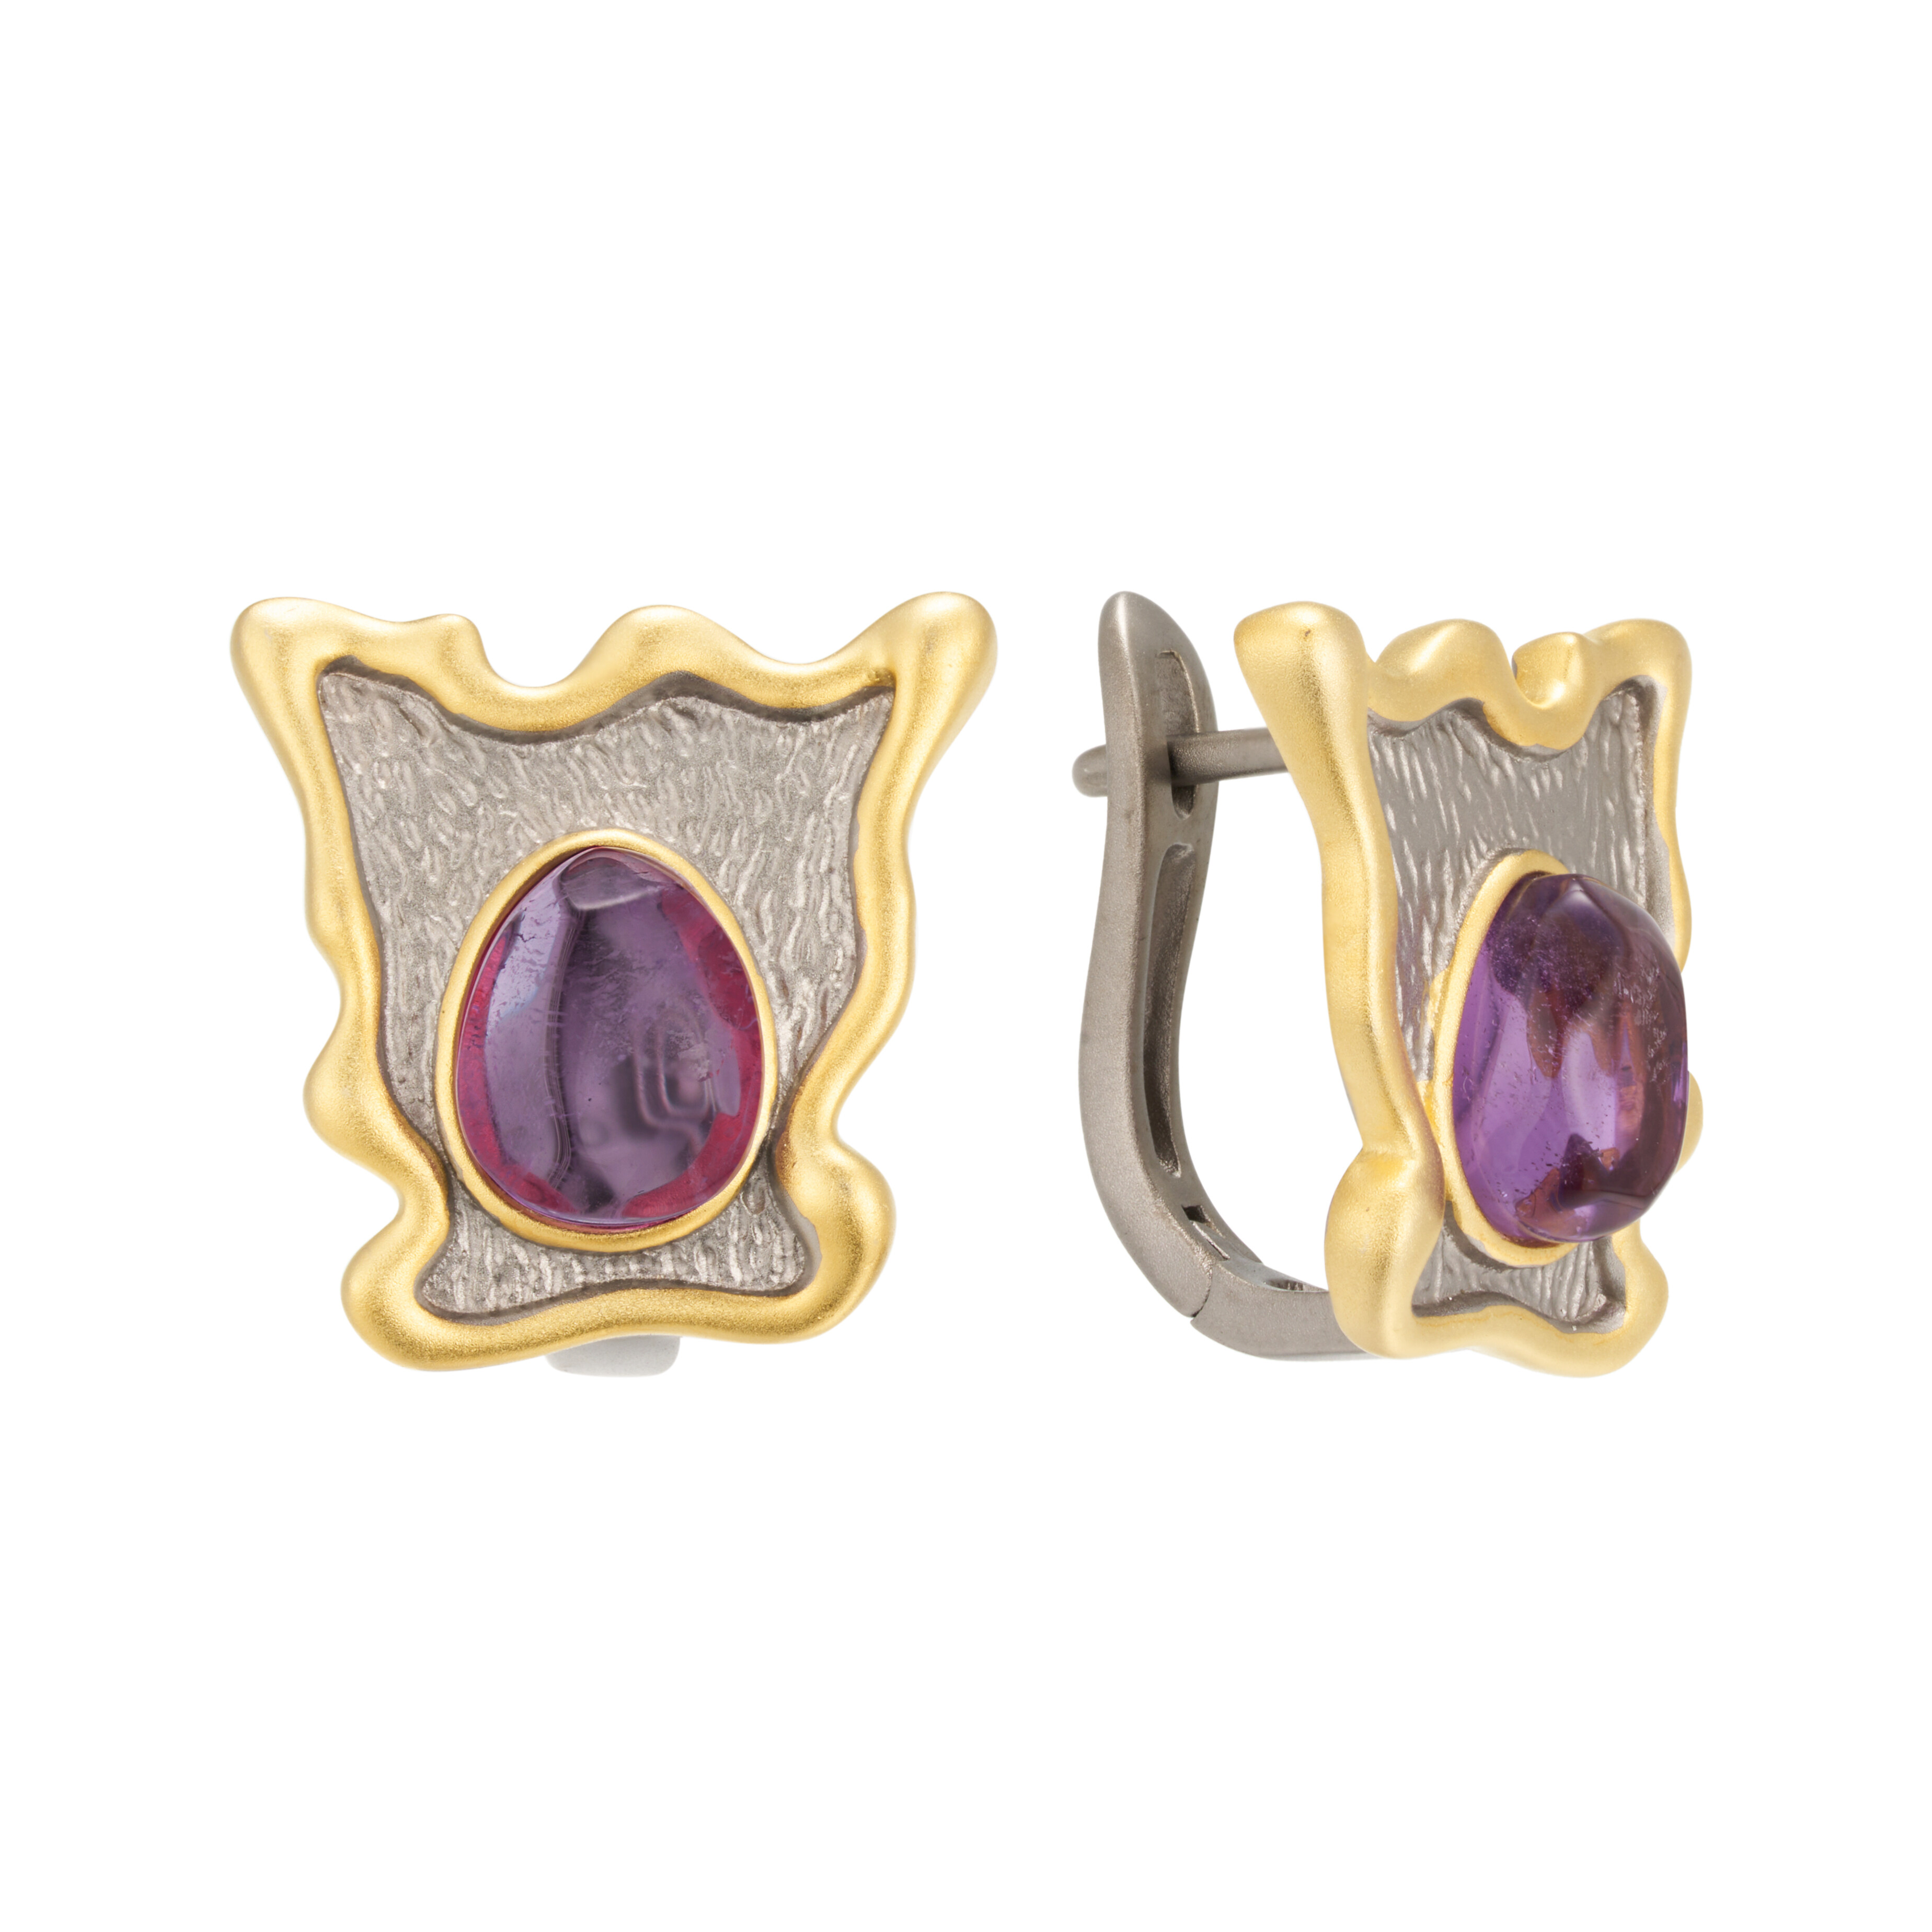 Handmade； S925 Sterling Silve； Earrings； Luxury Jewelry